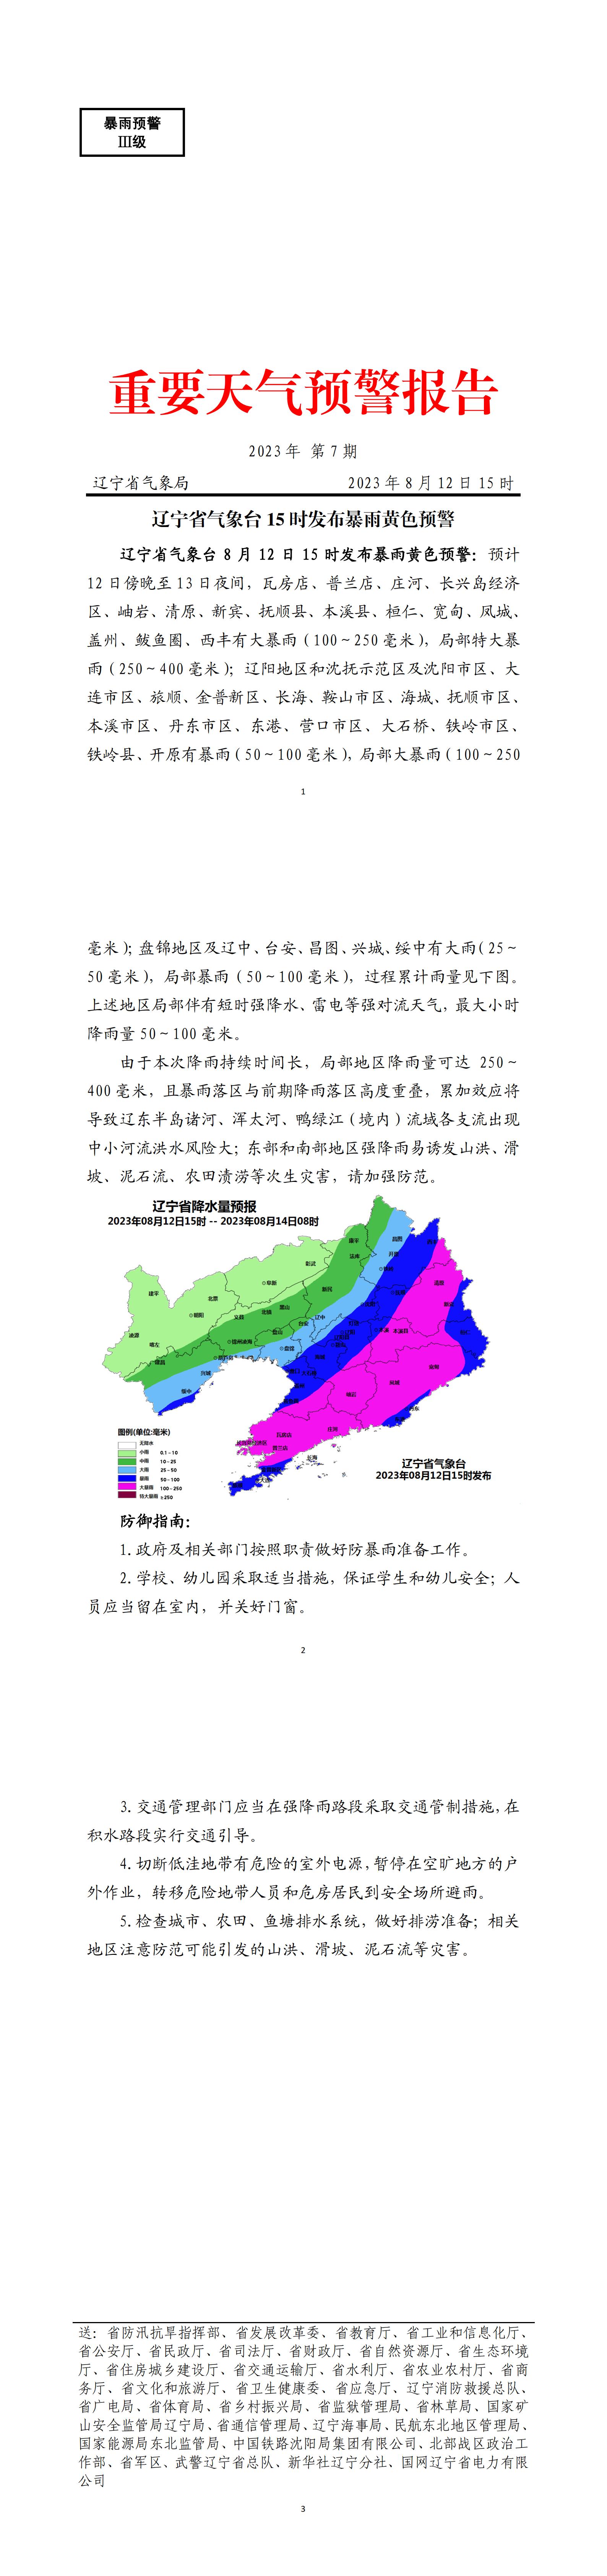 重要天气预警报告2023年第7期 辽宁省气象台8月12日15时发布暴雨黄色预警_00.jpg